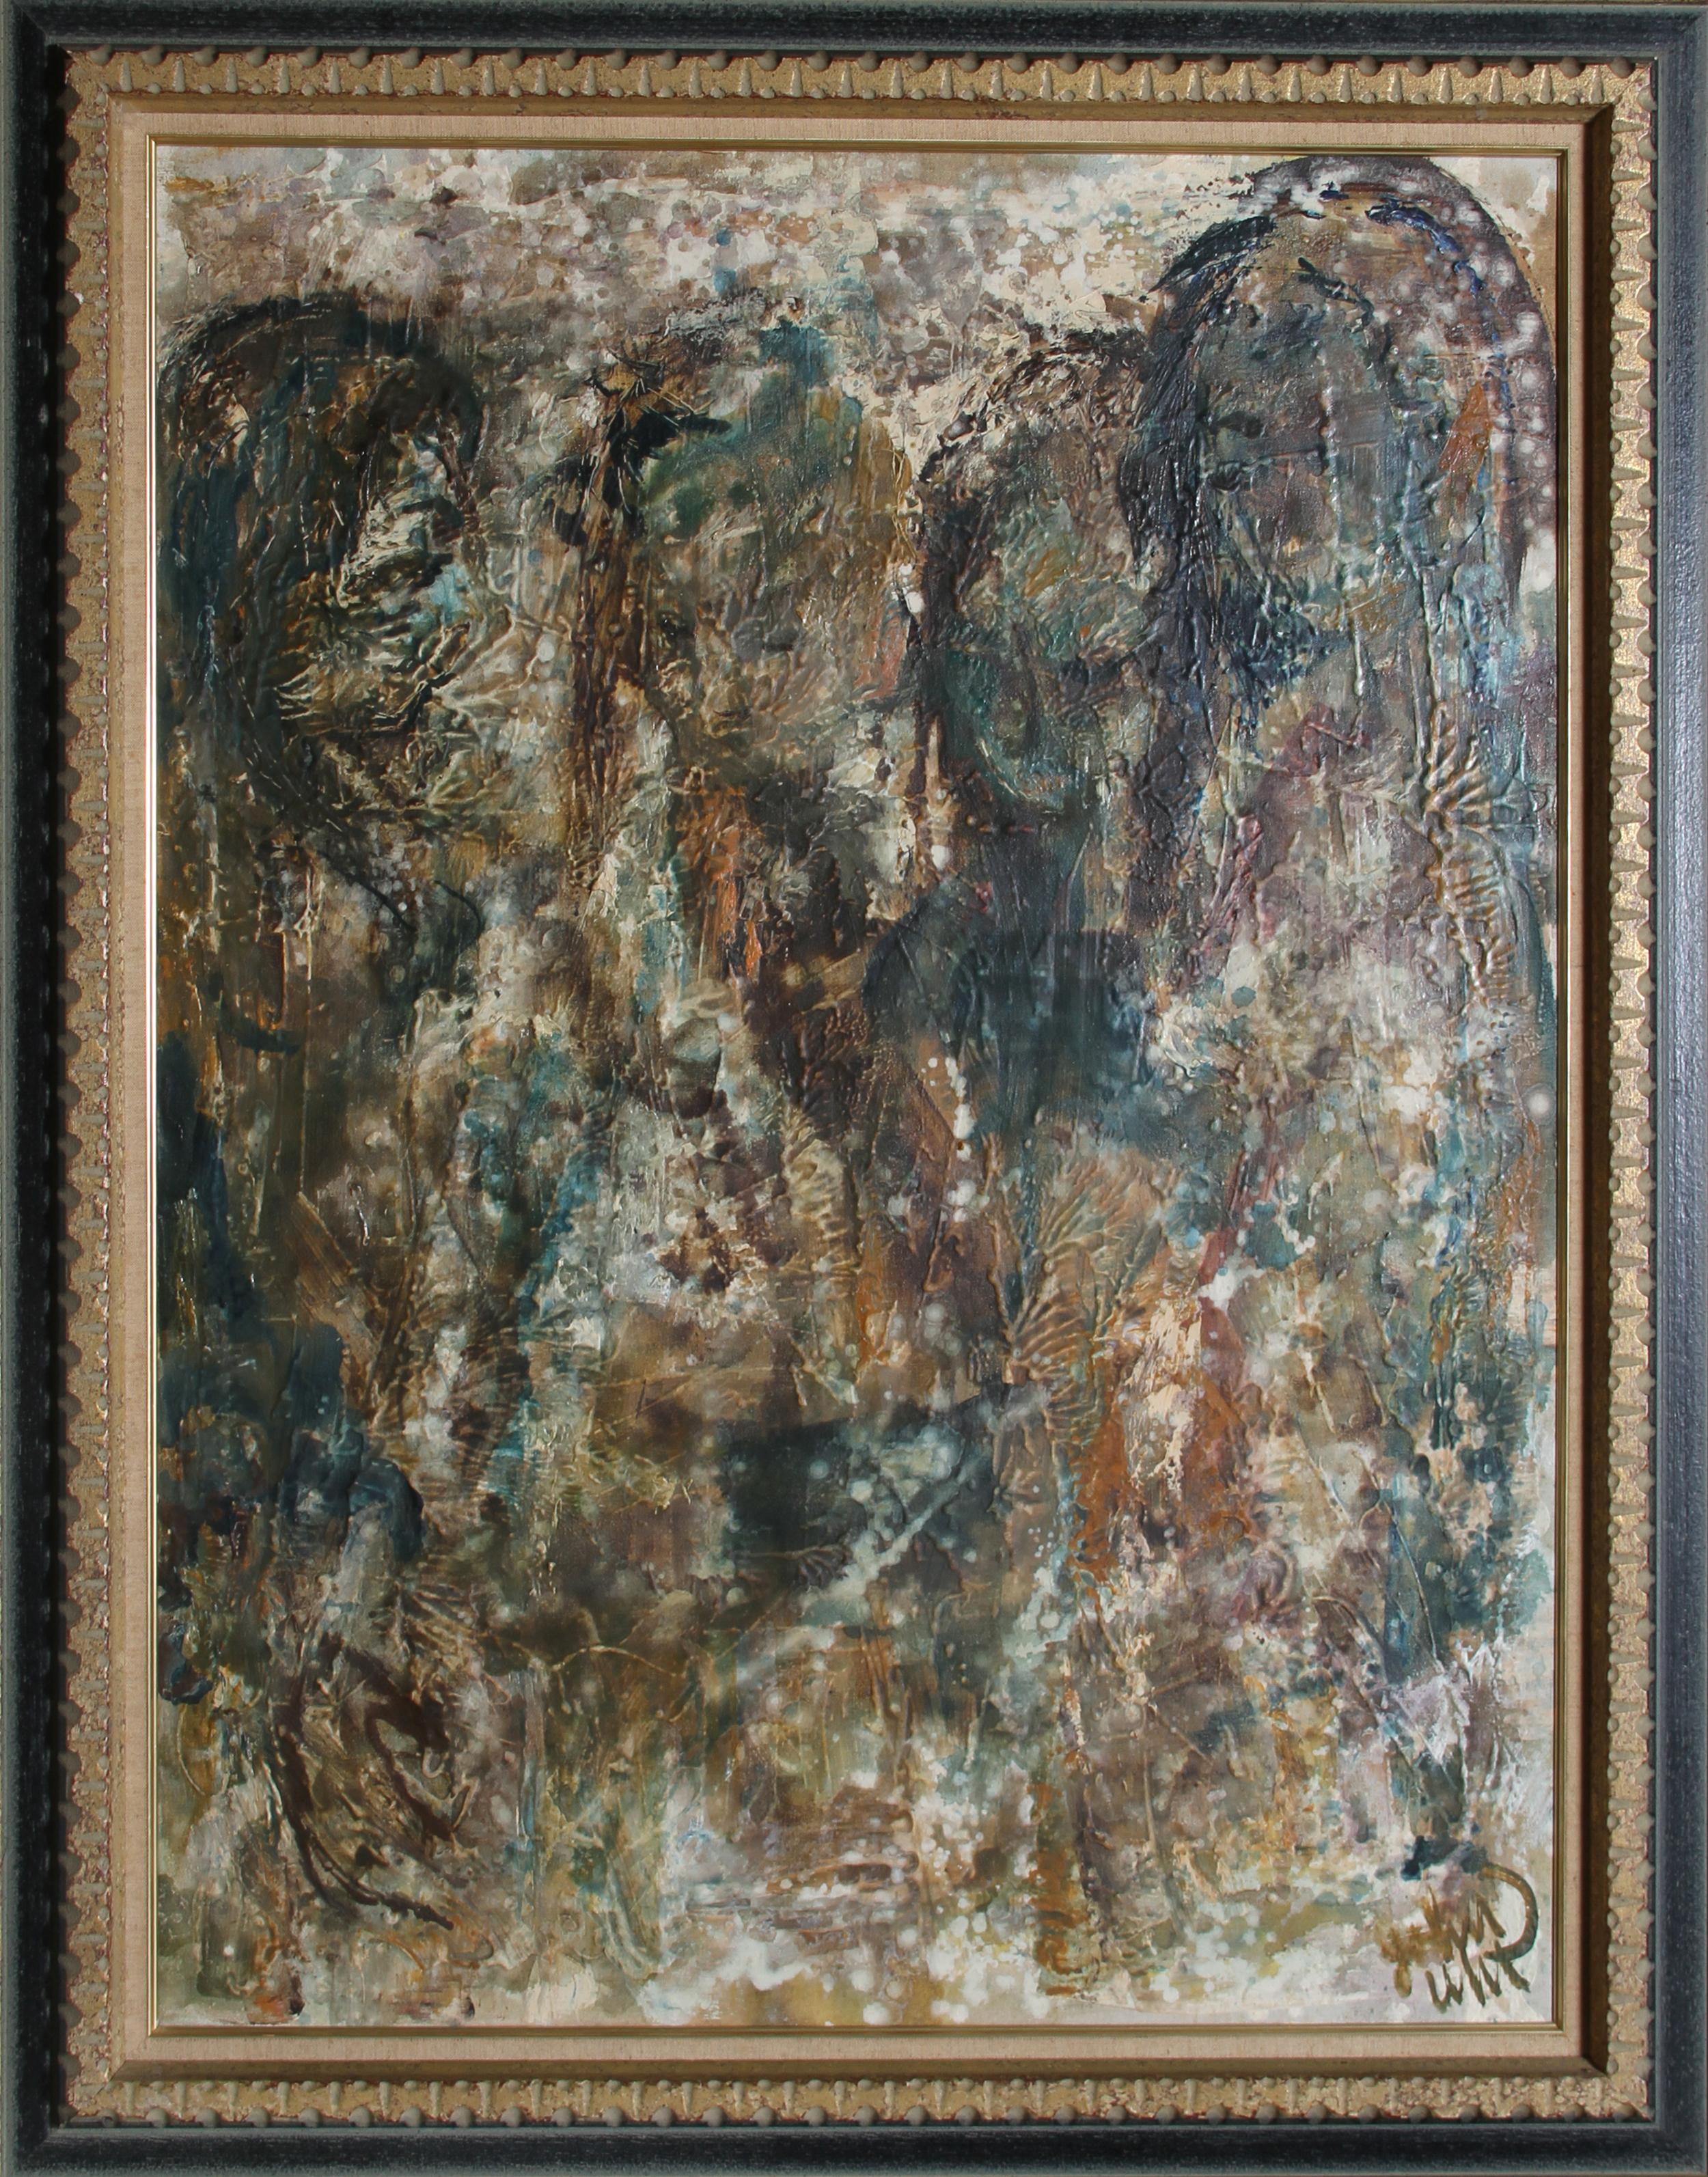 Artiste : John Uht, américain (1924 - 2010)
Titre : Quatre figures
Année : vers 1960
Médium : Huile sur toile, signé l.l.
Taille : 101,6 cm x 76,2 cm (40 in. x 30 in.)
Taille du cadre : 46.5 x 36.5 pouces